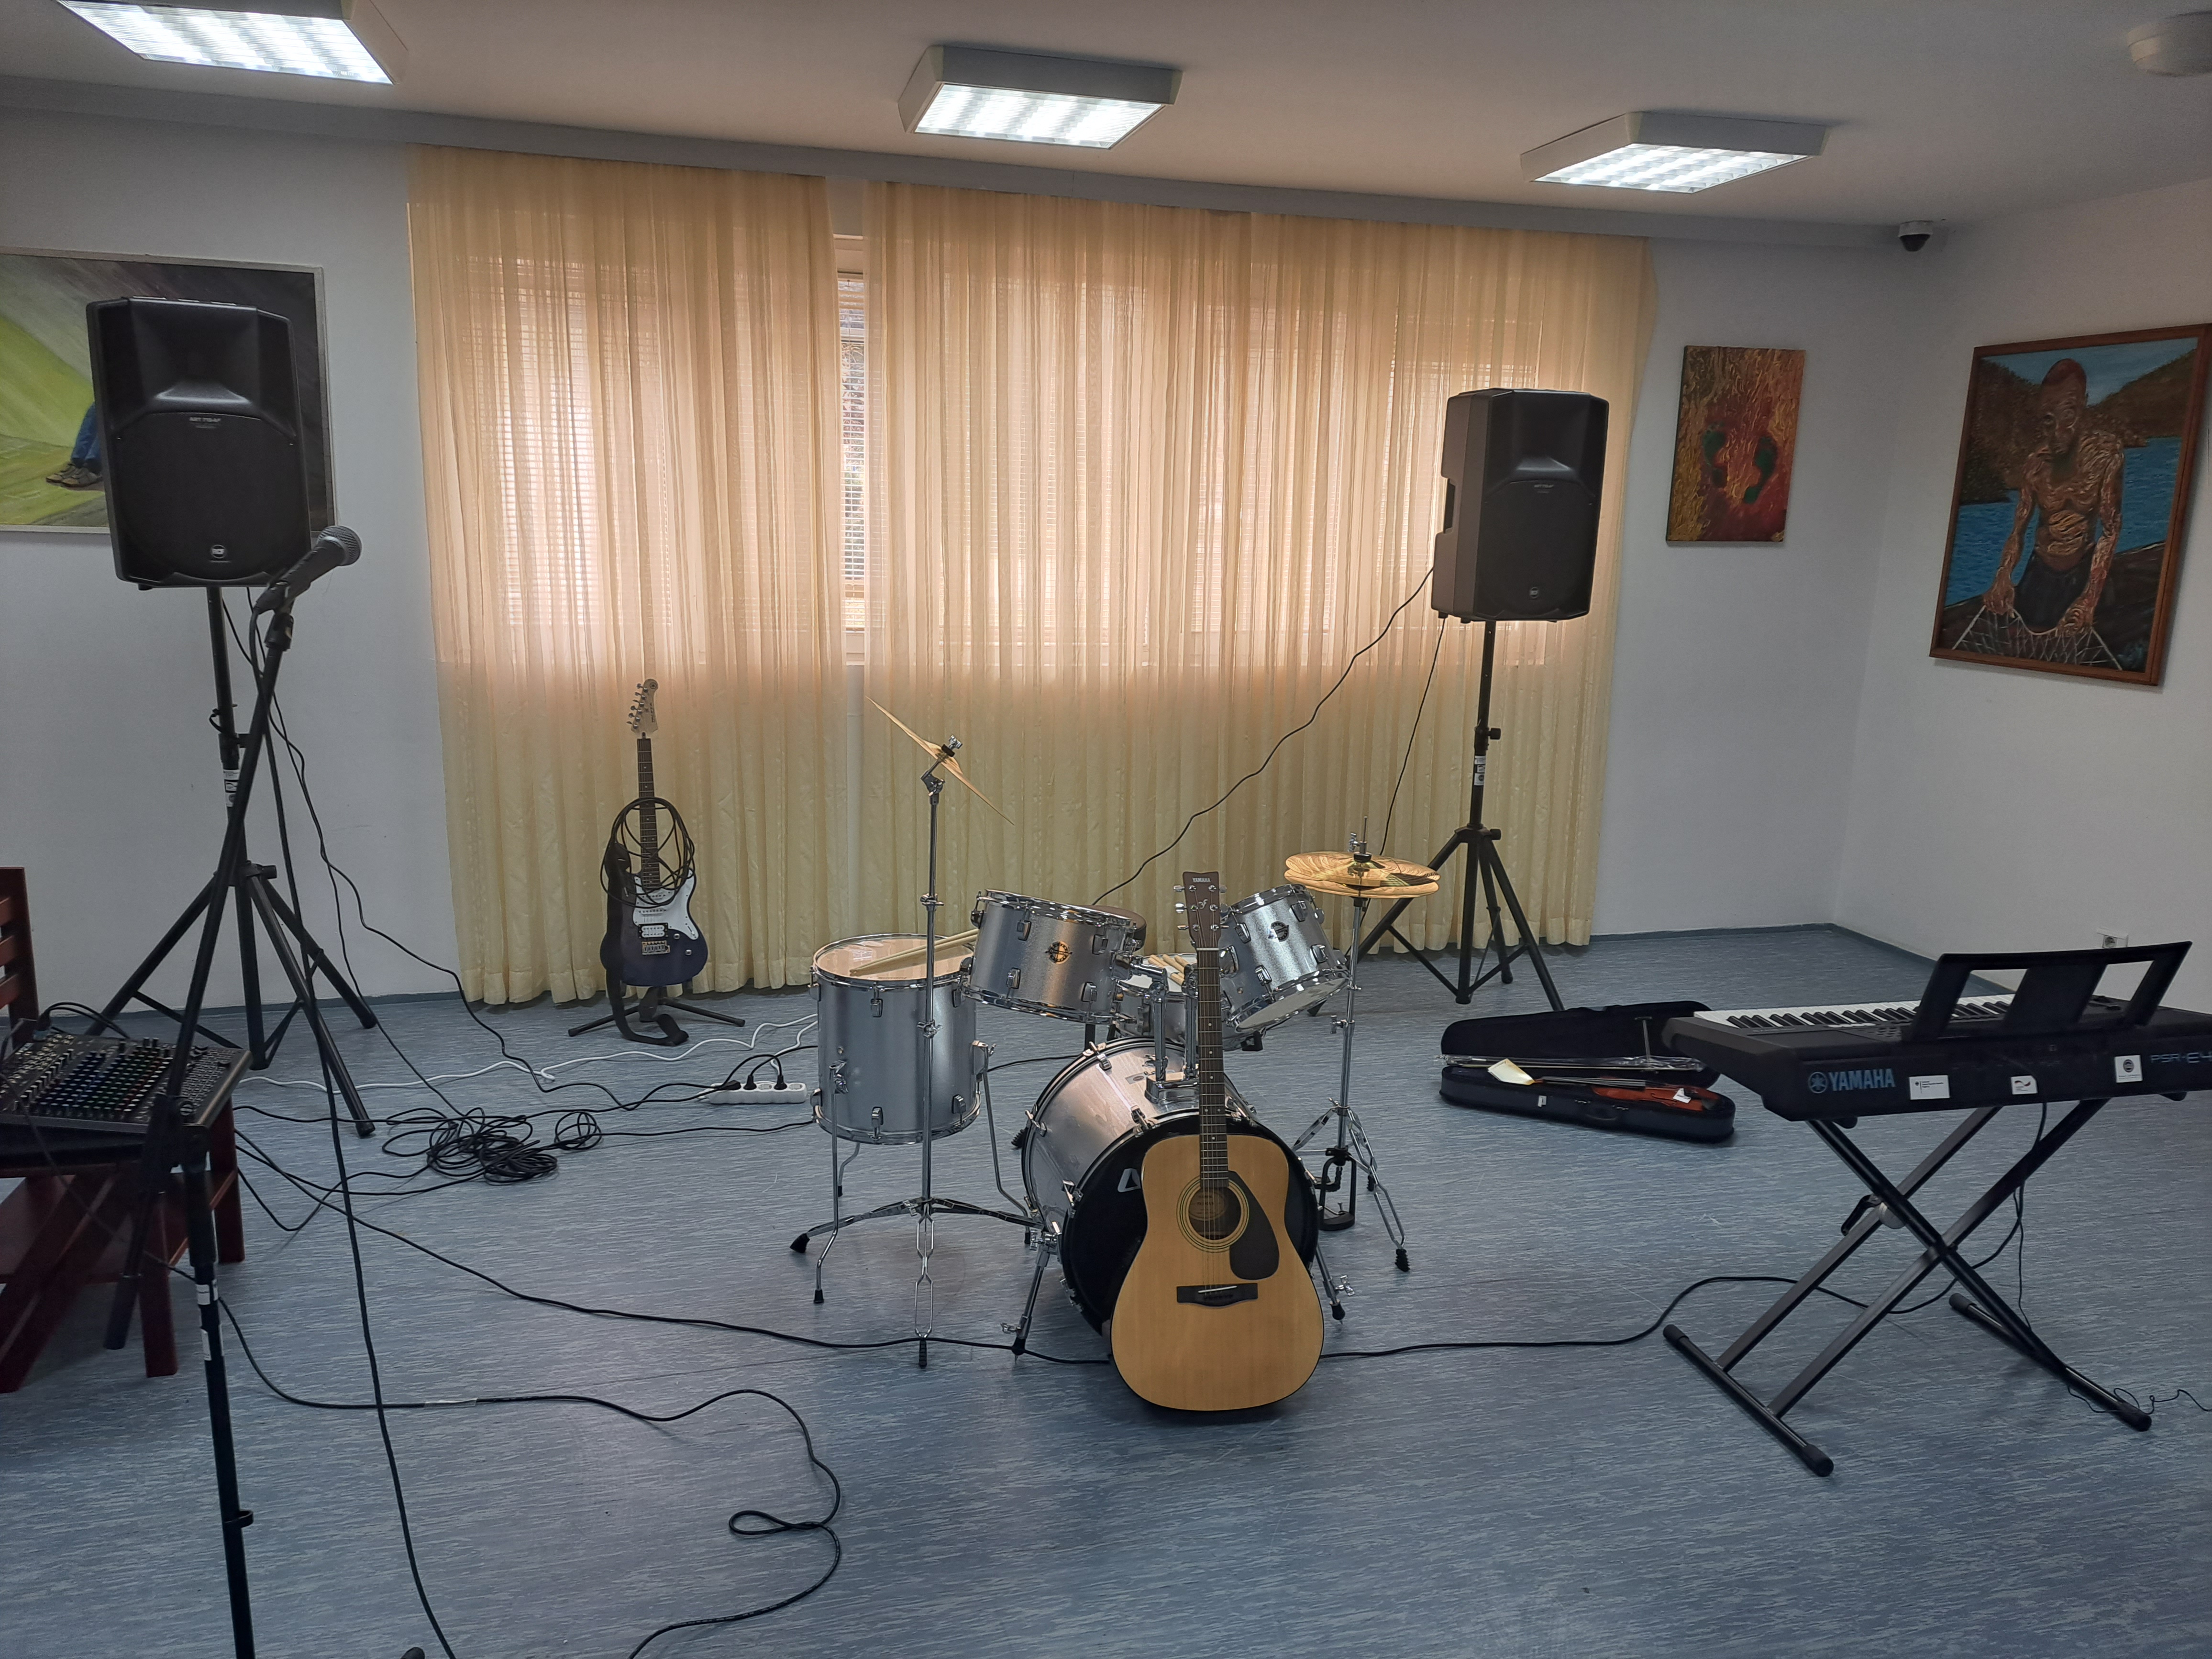 Uručena donacija muzičkih instrumenata Javnoj ustanovi na Kakarickoj gori